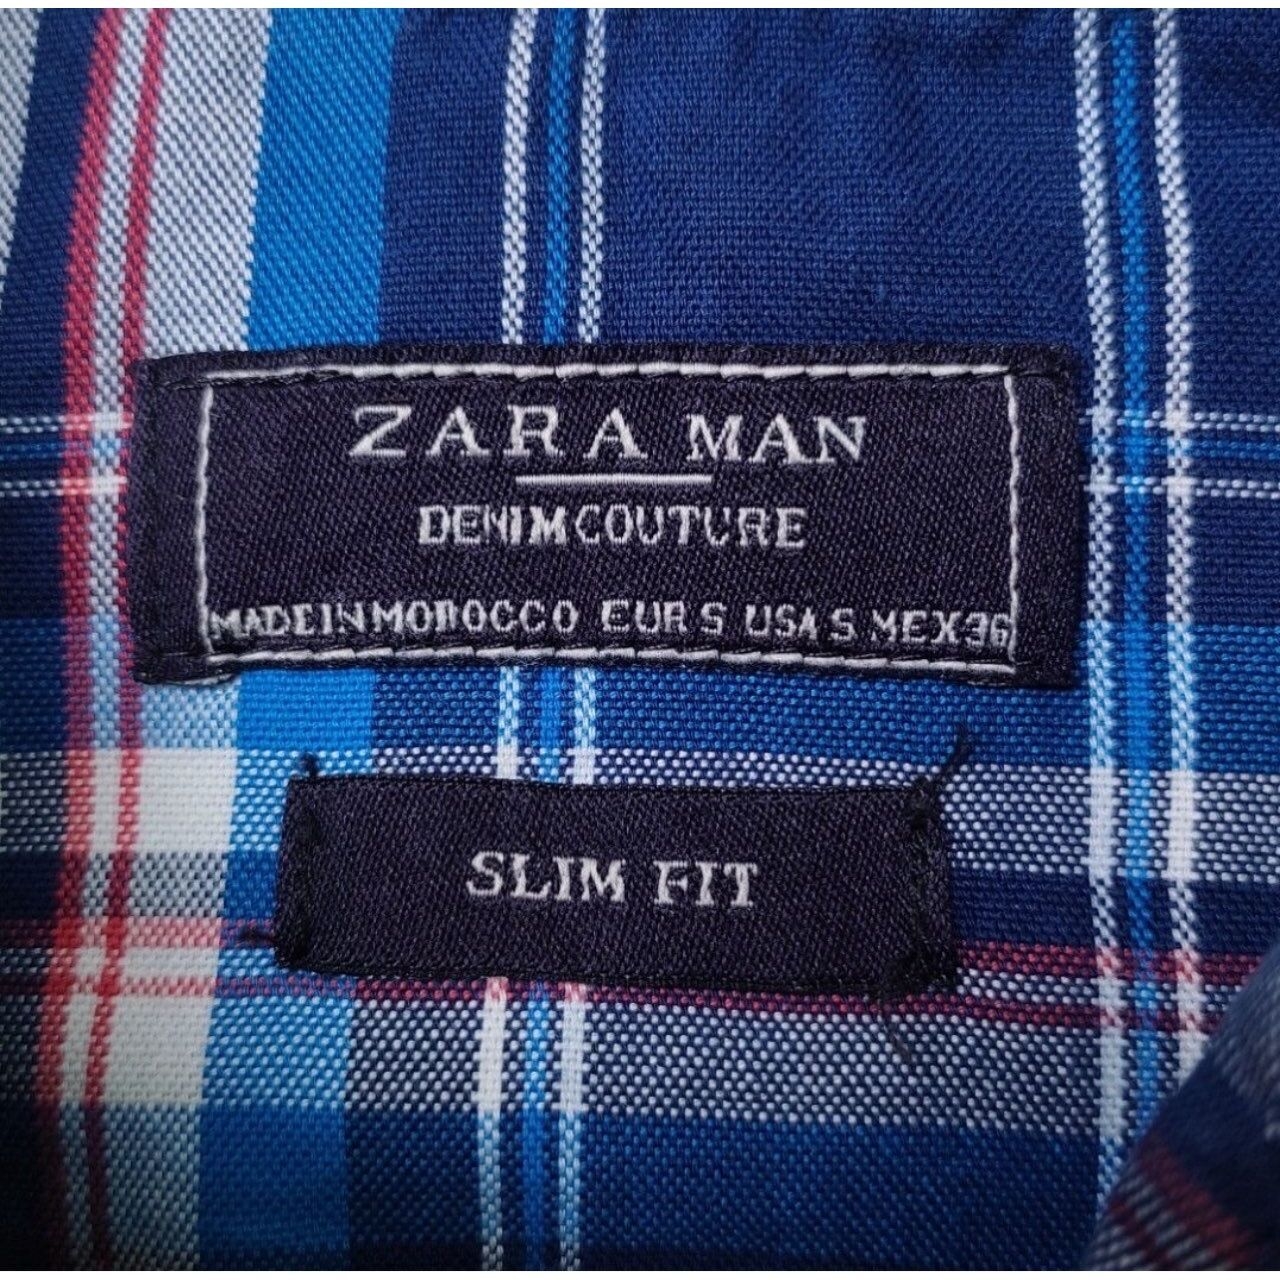 Zara Man Jeans Plaid Button Up Shirt